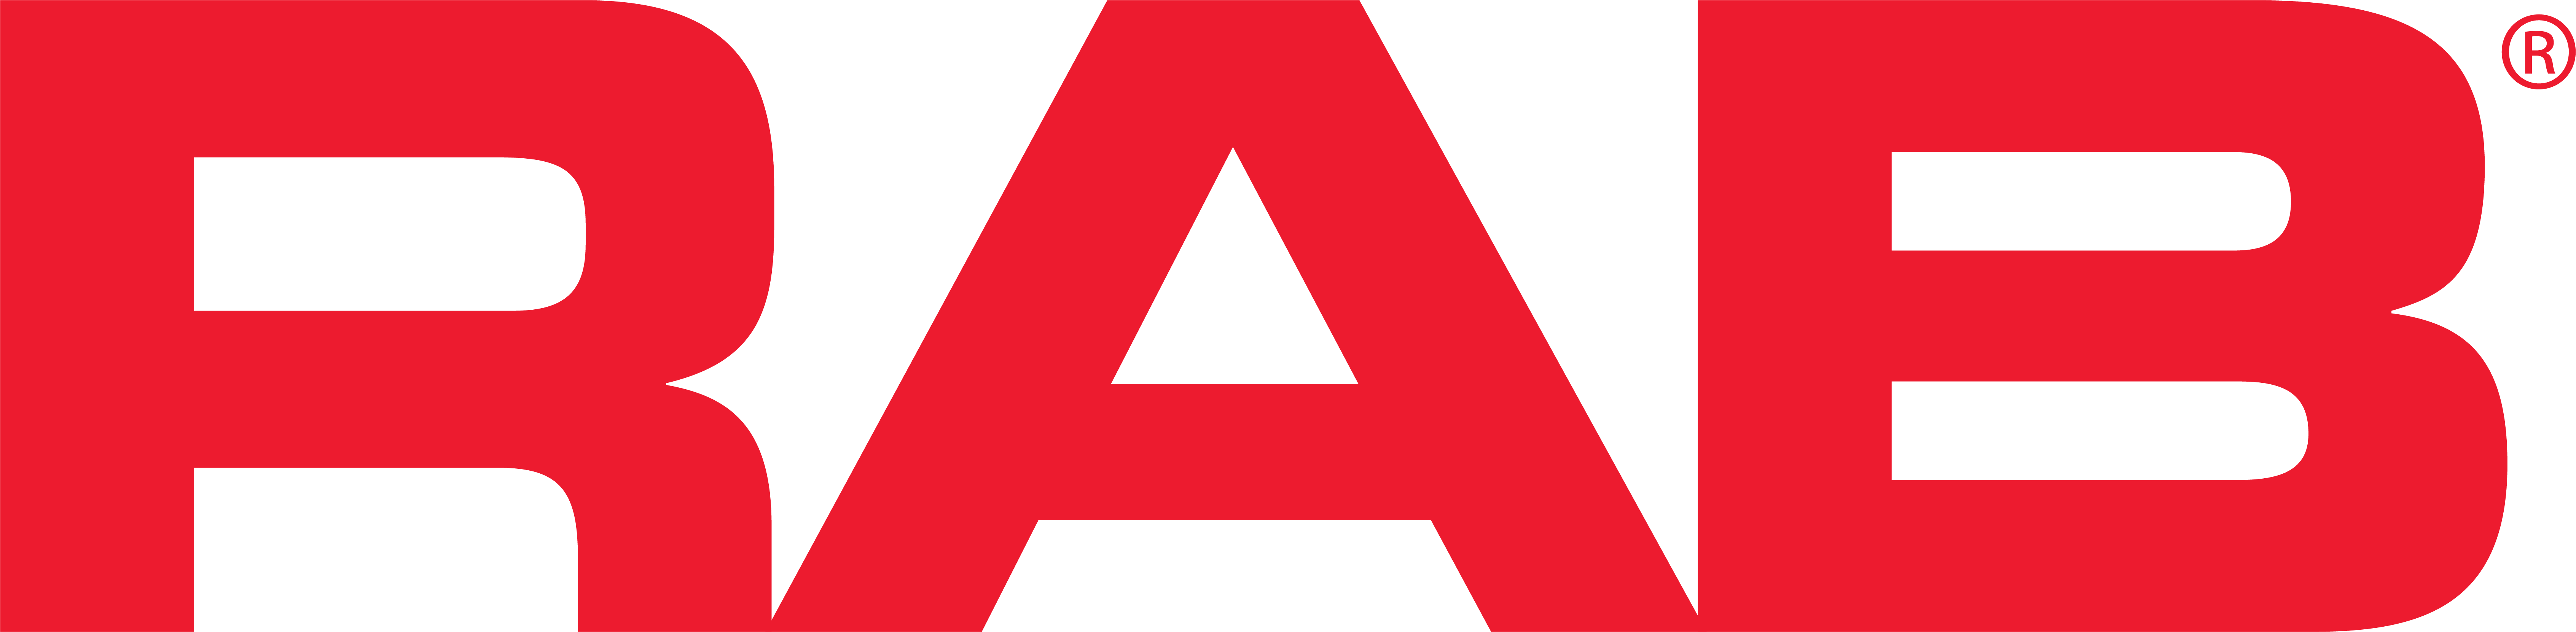 Red RAB Logo-2018